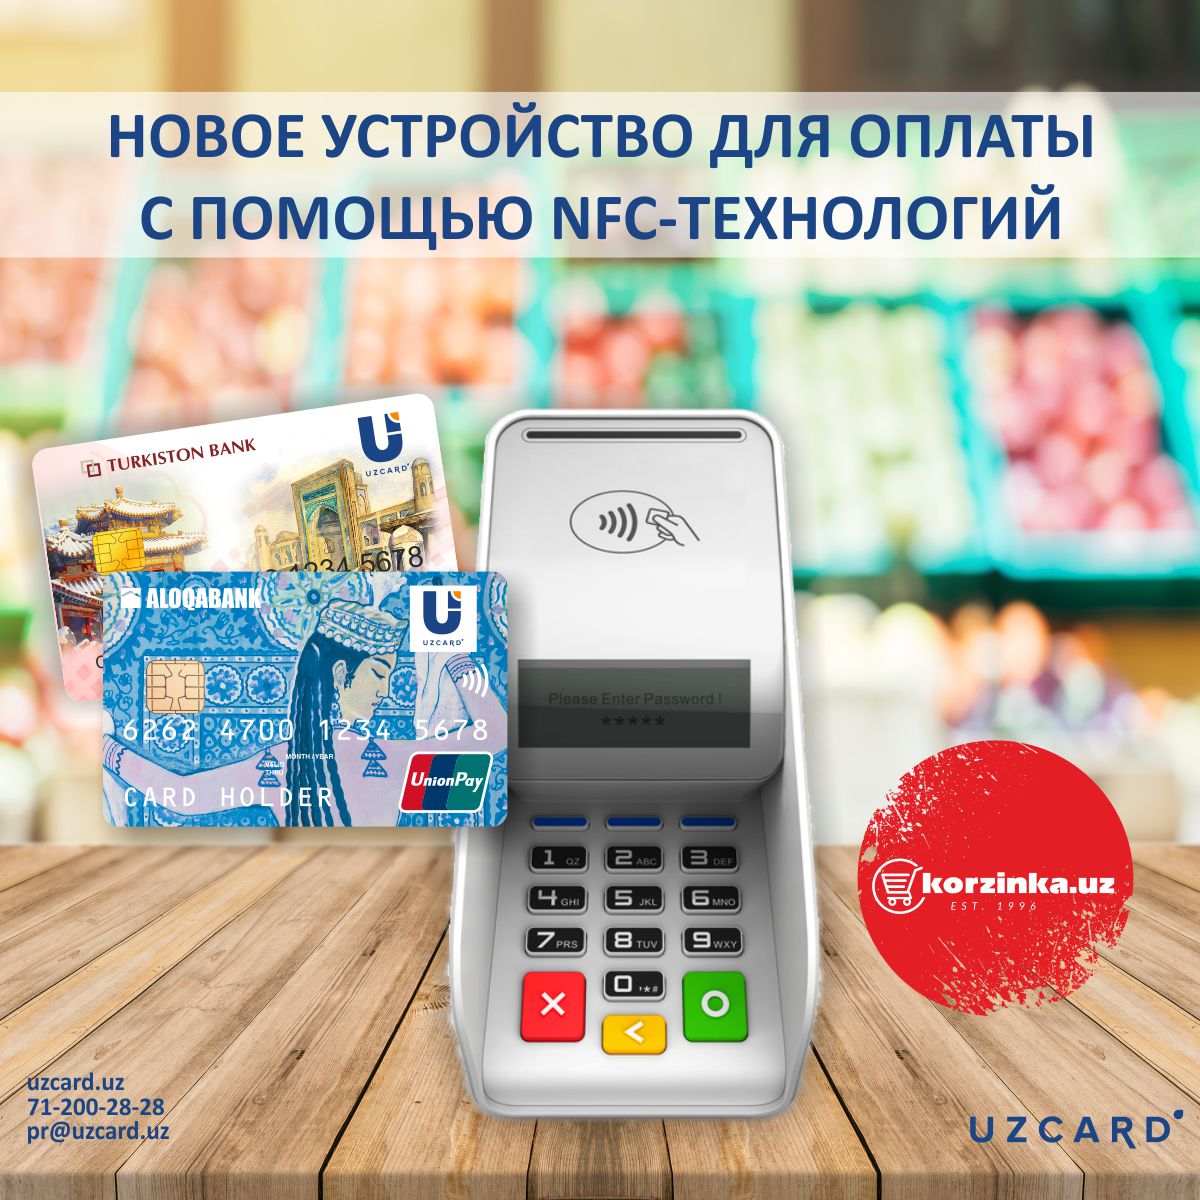 Uzcard анонсировал появление бесконтактной оплаты в супермаркетах Korzinka.uz